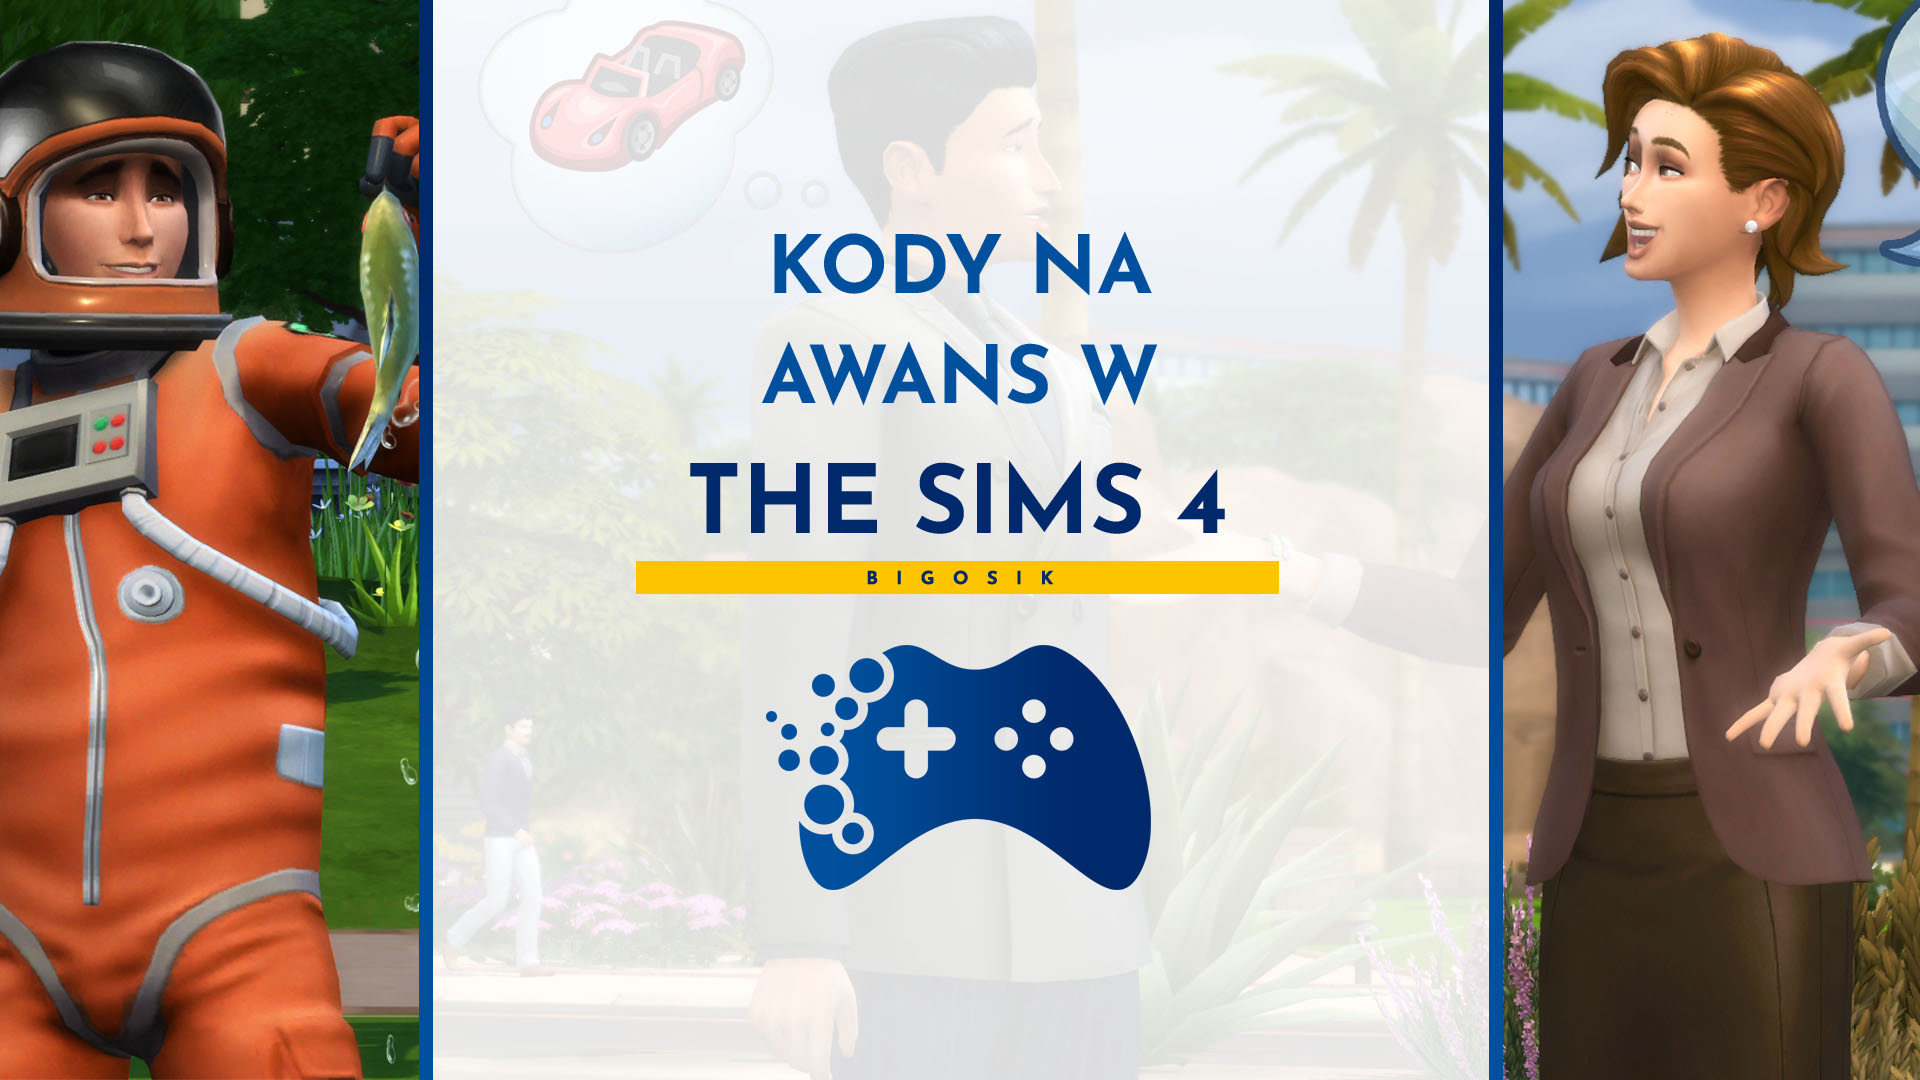 Kody na awans w The Sims 4